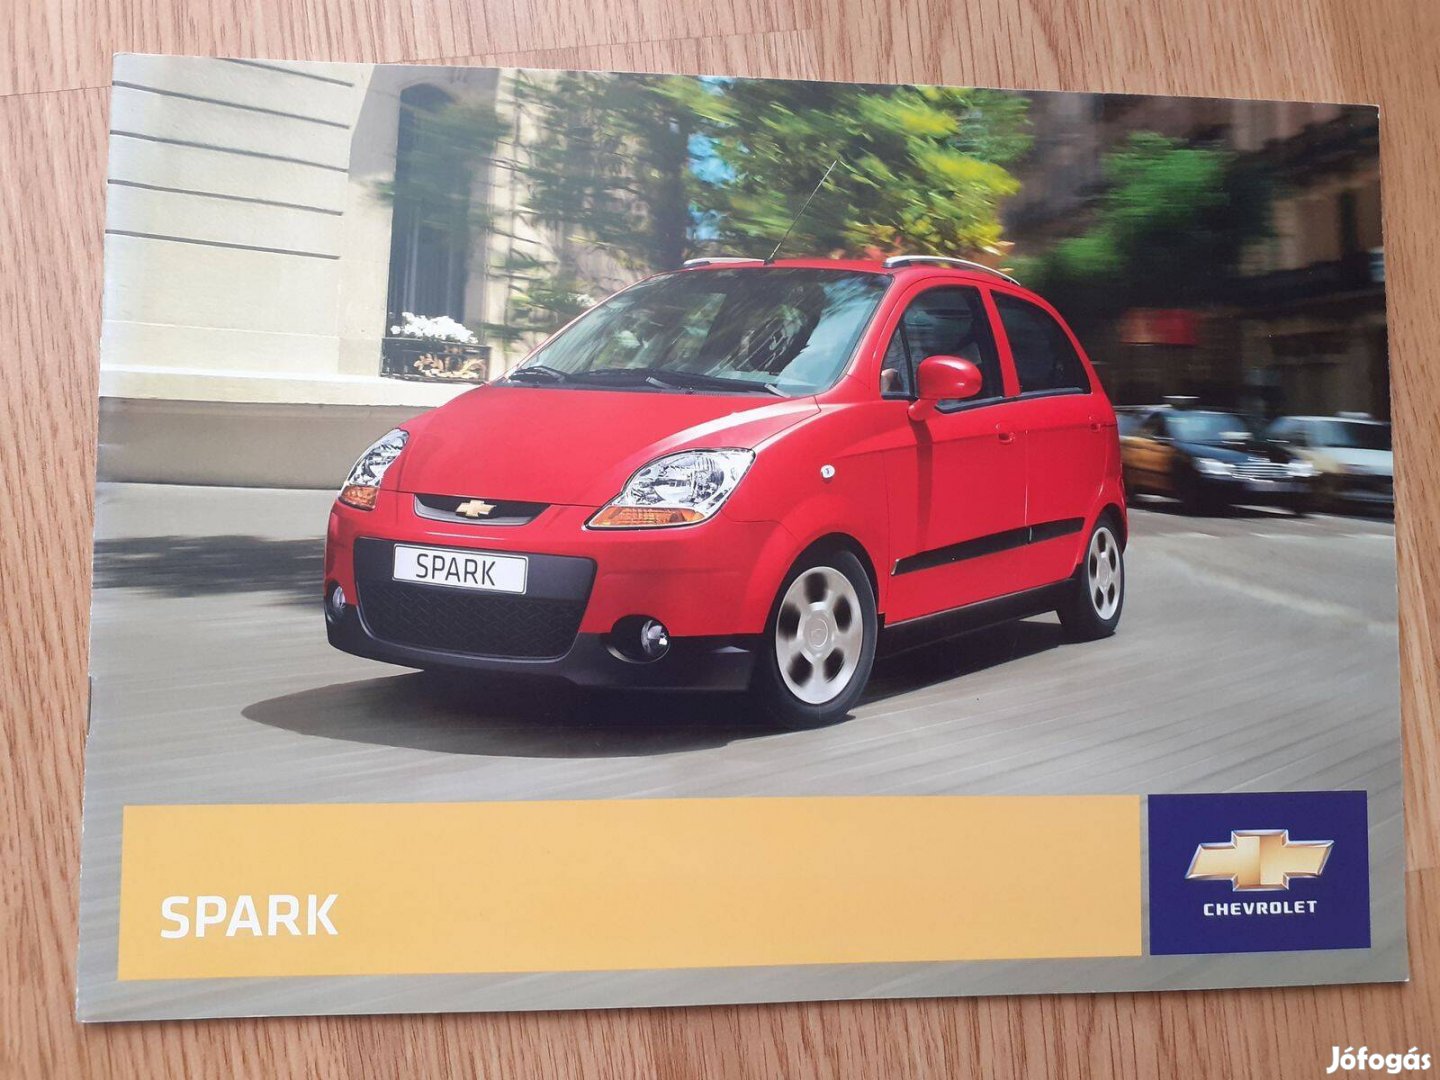 Chevrolet Spark prospektus - 2007, magyar nyelvű